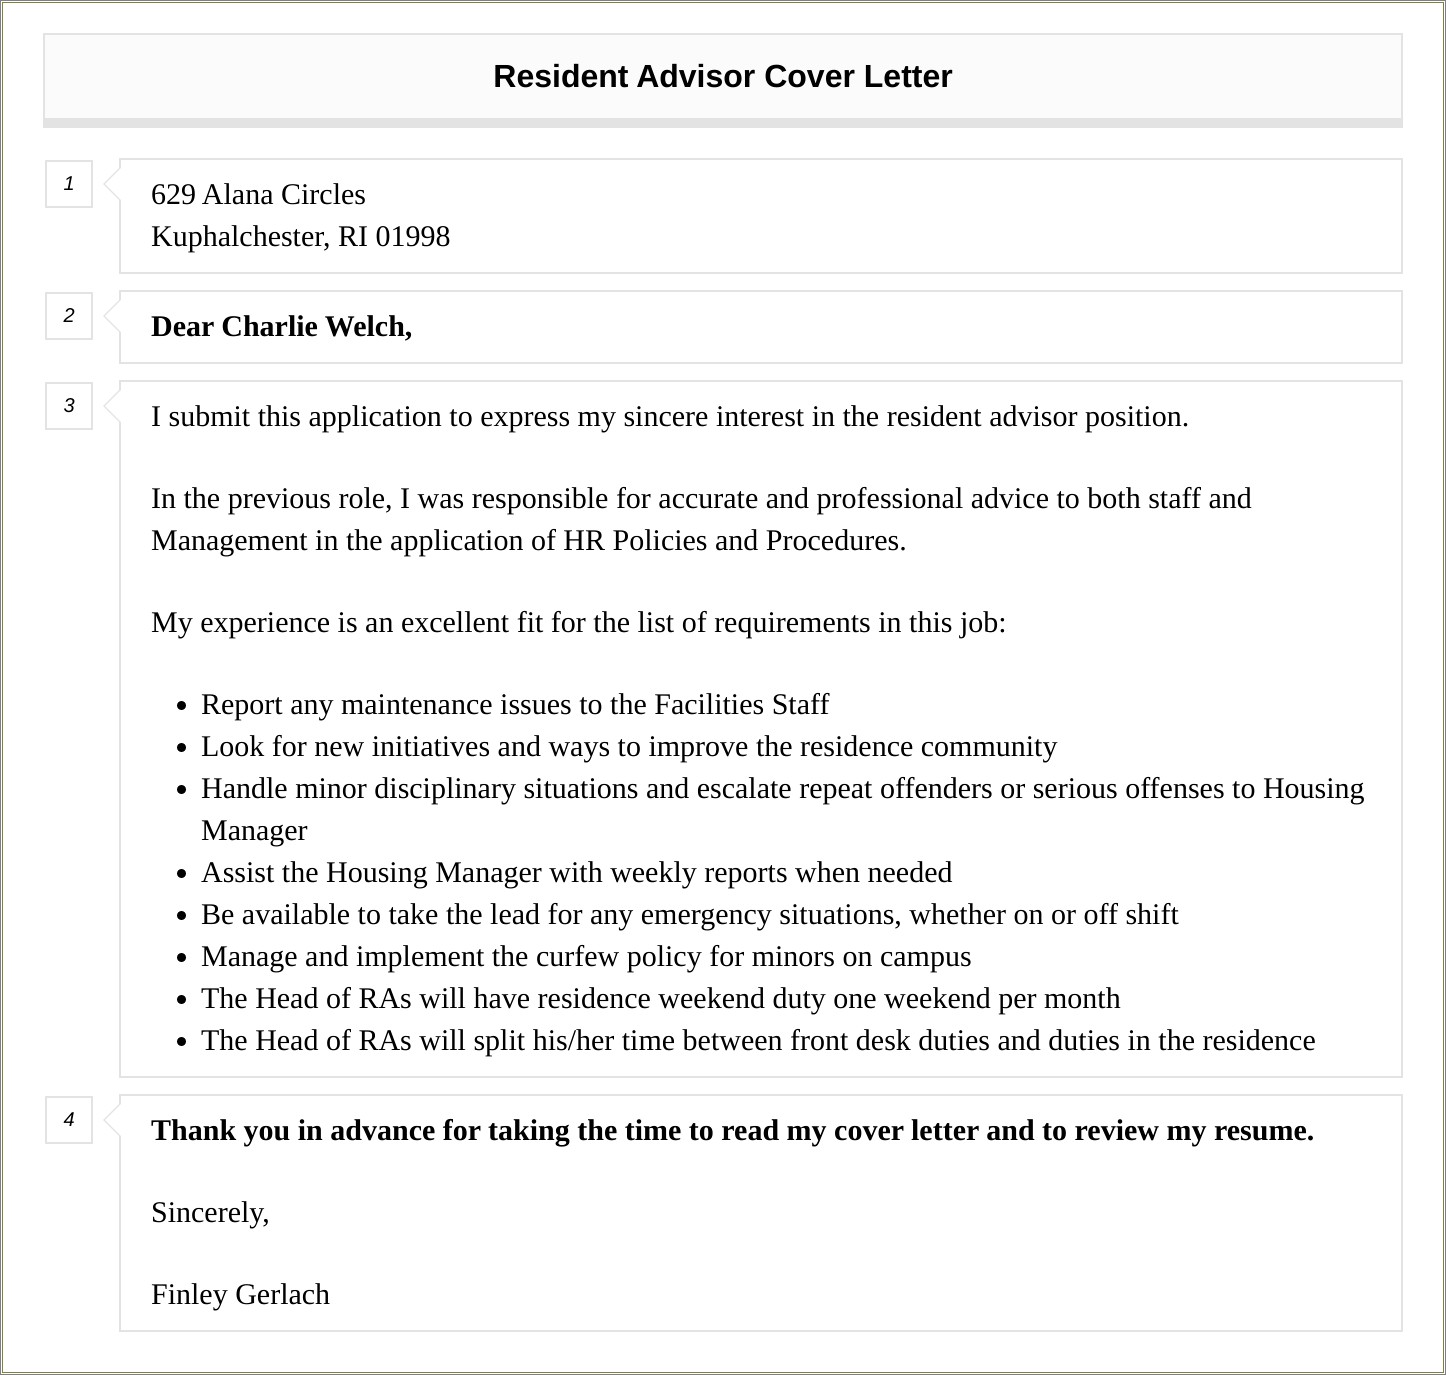 Resident Advisor Job Description For Resume